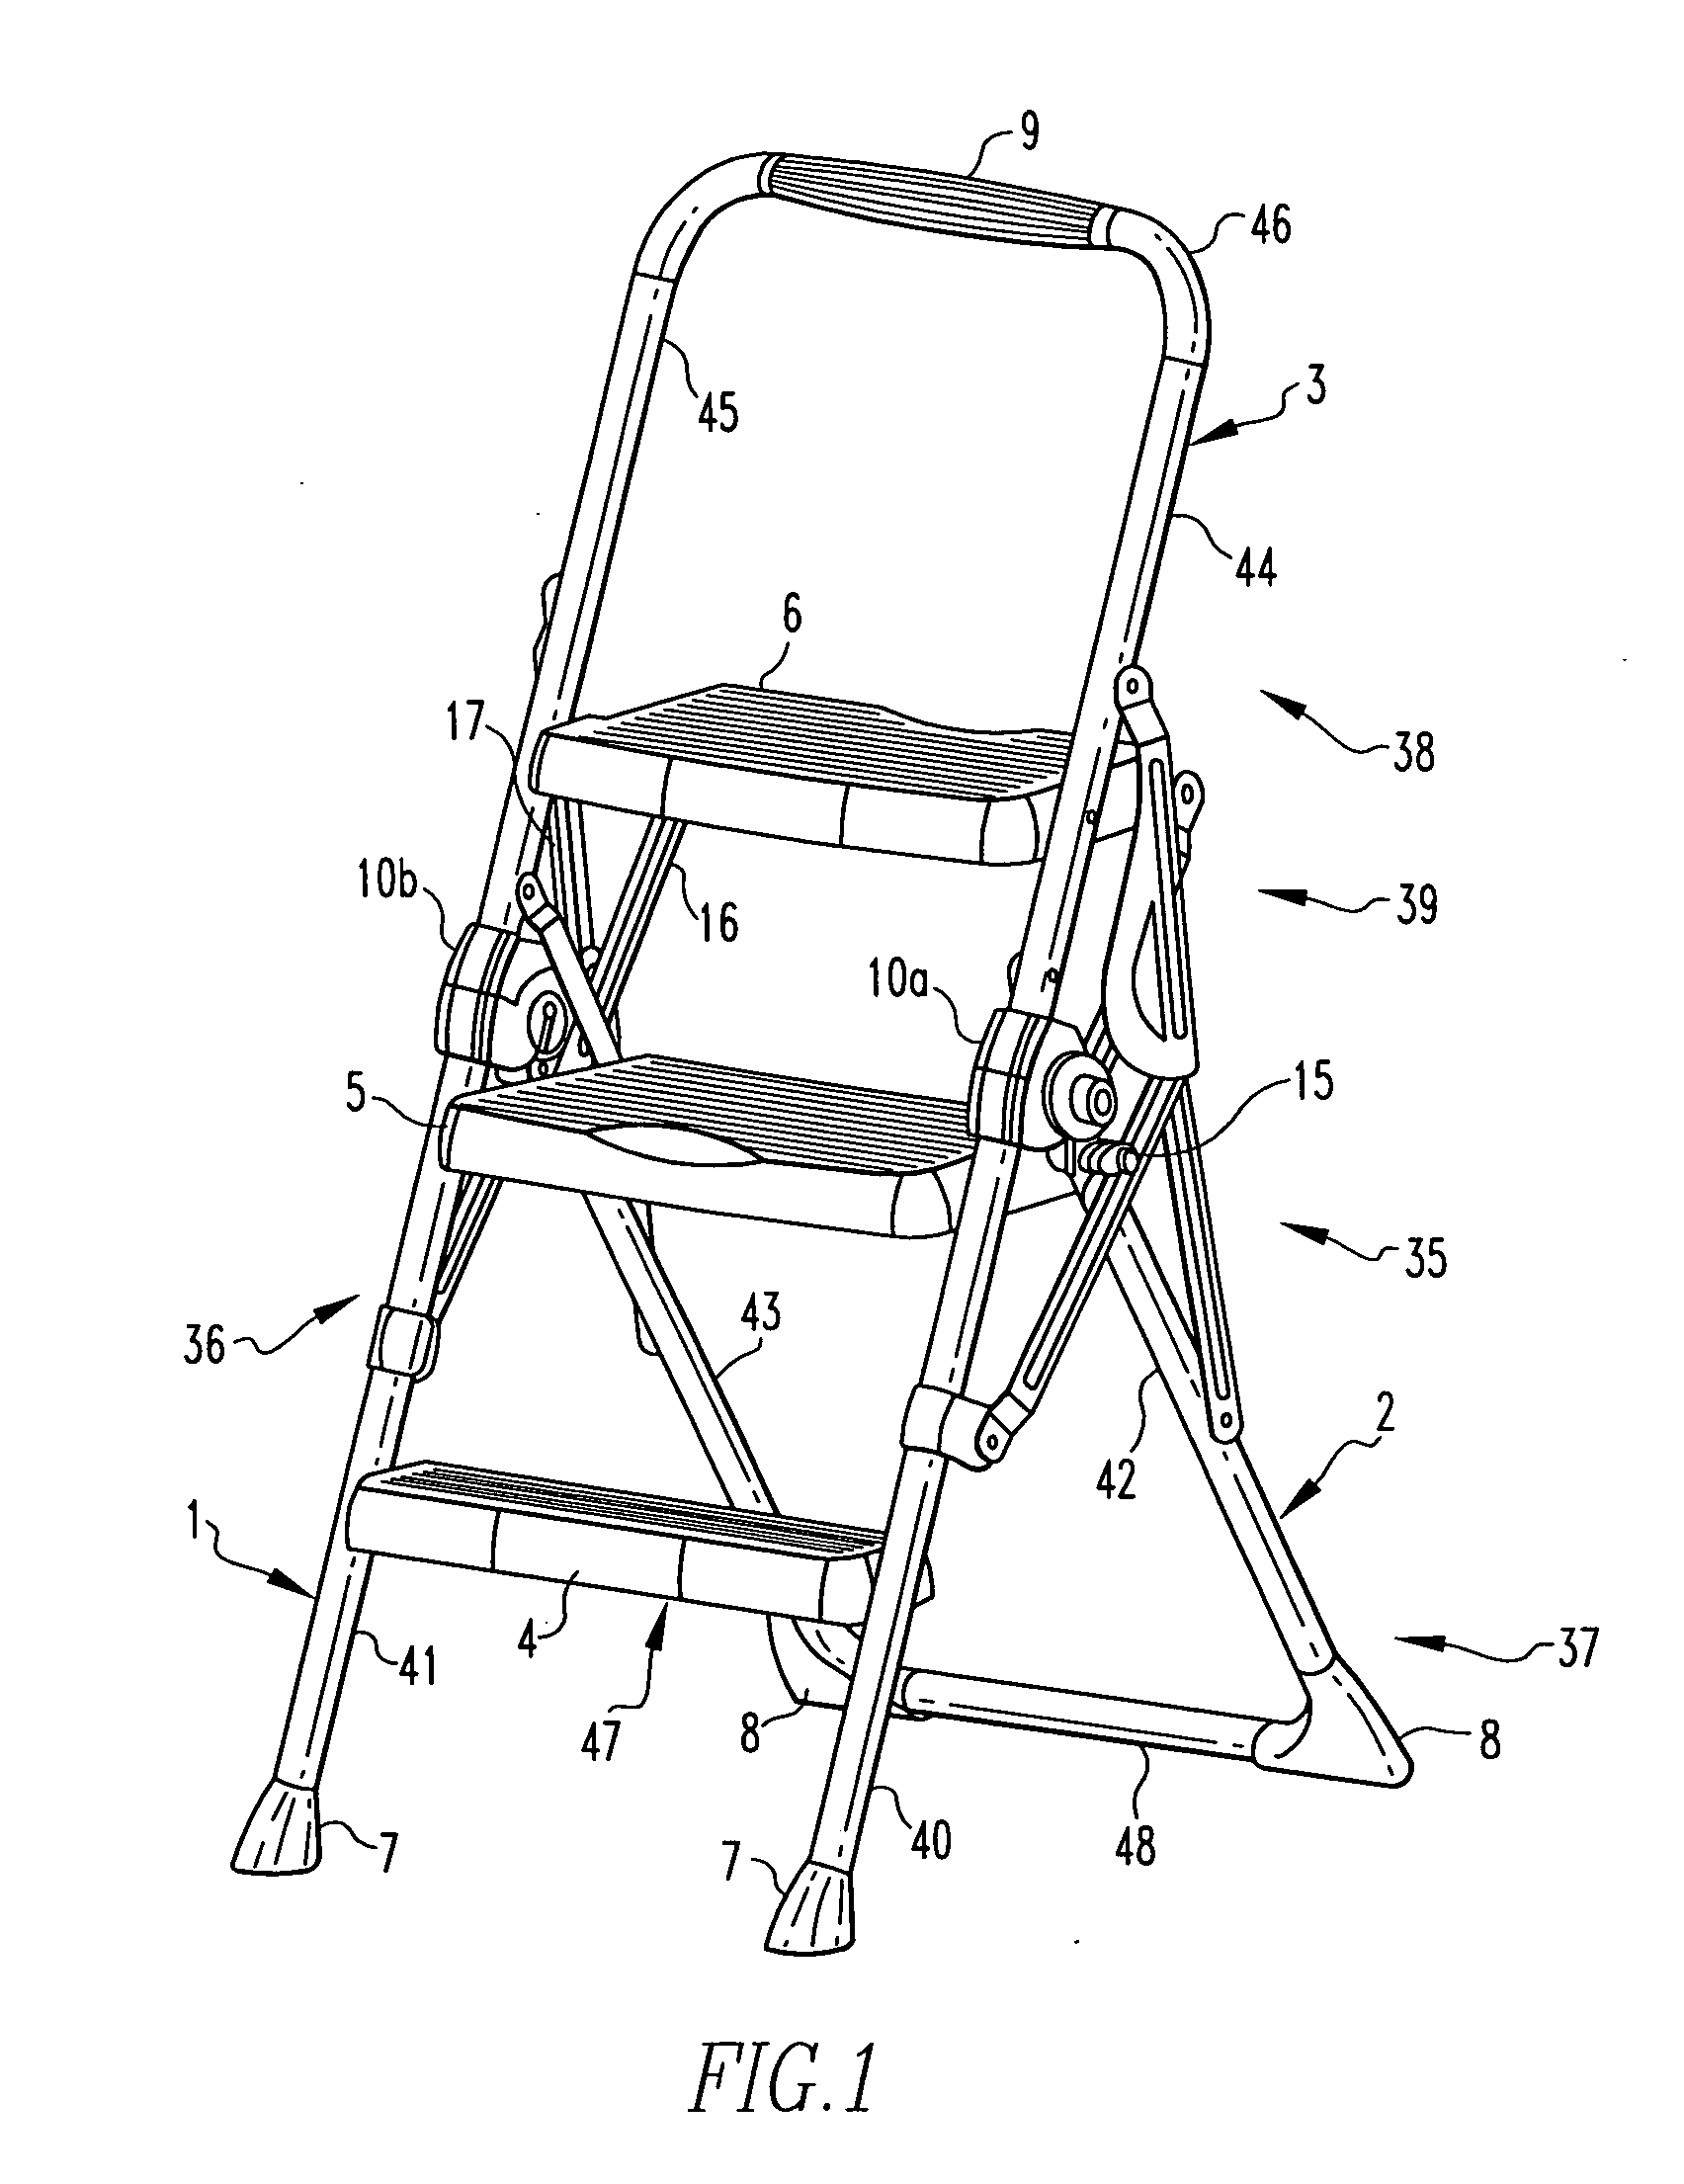 Step stool, hinge and method